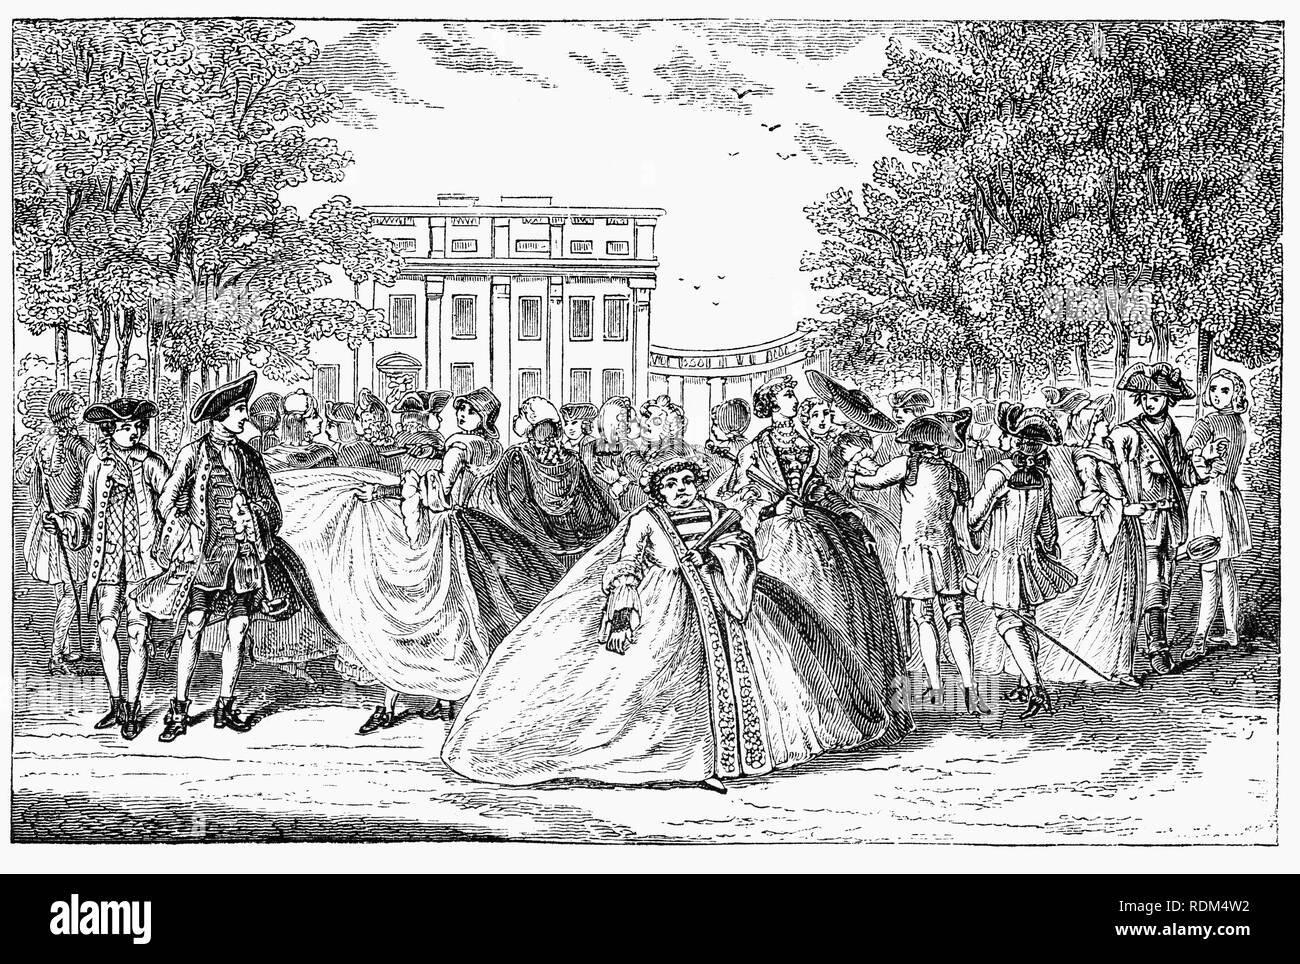 Während des 18. Jahrhunderts, Alamode, war einst die Bezeichnung für einen Stoff, aber in diesem Fall bedeutet "aus der Mode". Der Adel Promenierenden im Jahre 1745 durch den St. James Park in London, England. Stockfoto